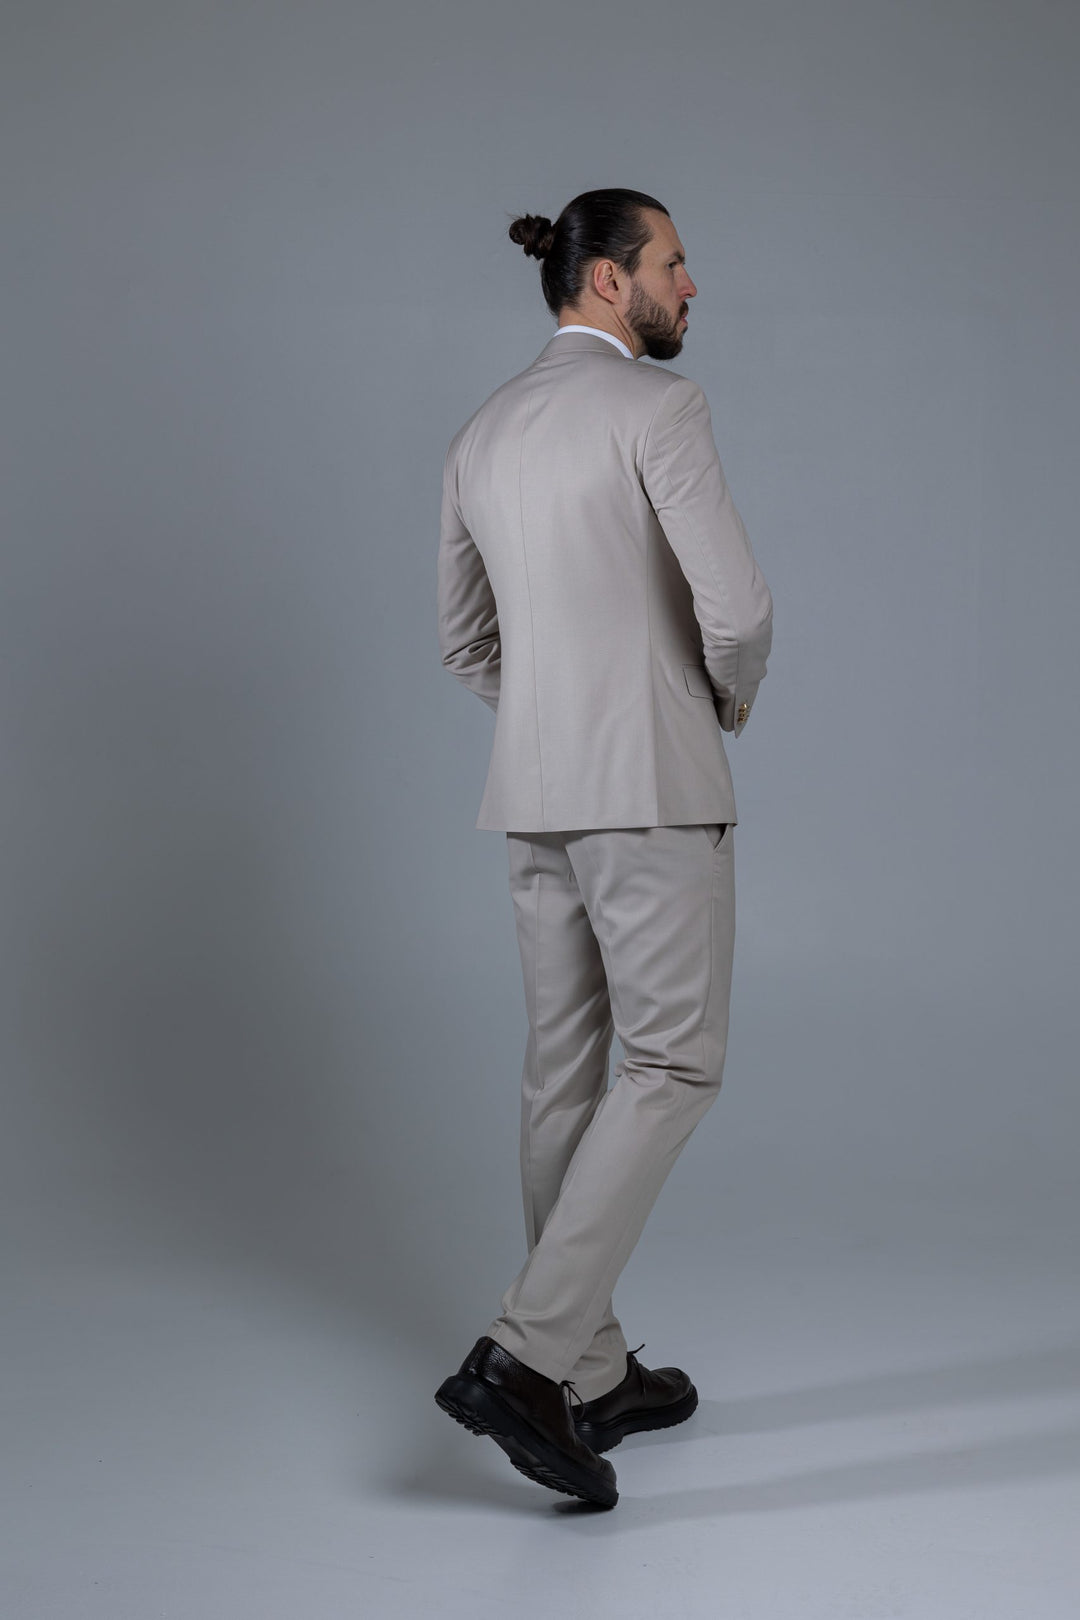 Three-piece suit in cream color